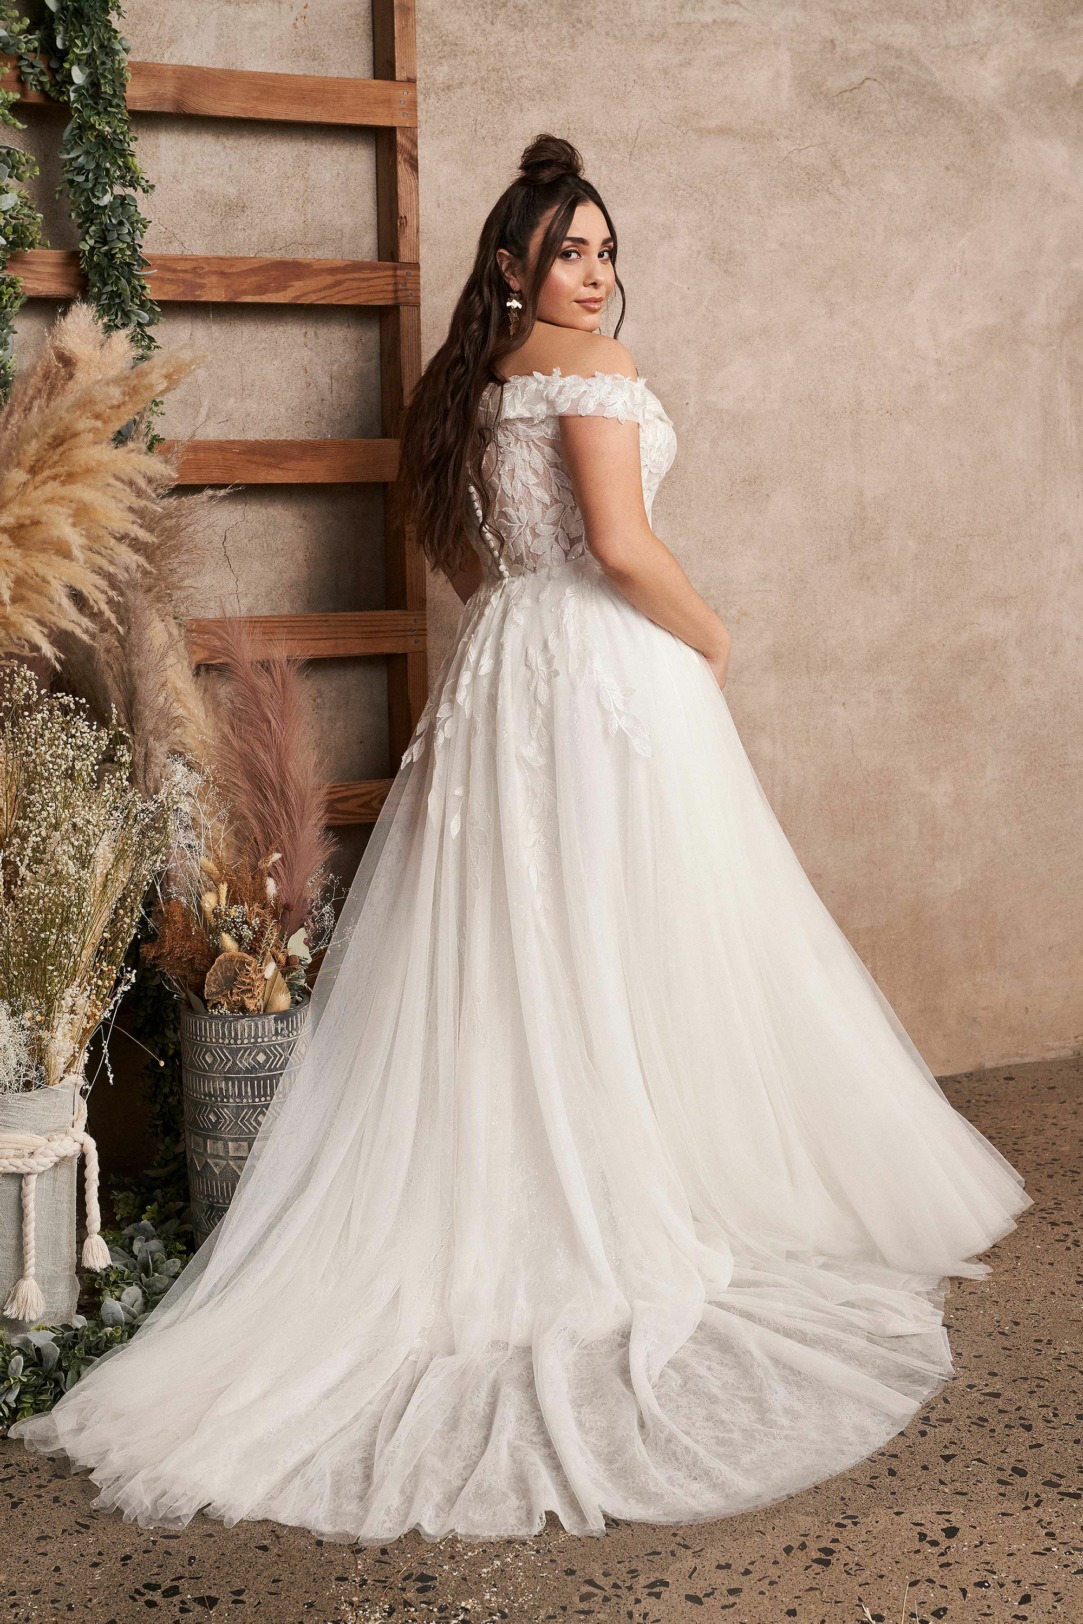 Hochzeitskleider Brautkleider im Prinzessinen Stil Modell 66196 für curvy Bräute das Dekoltee die abfließende Spitze am Rockansatz sorgt für die optimale Silhouette